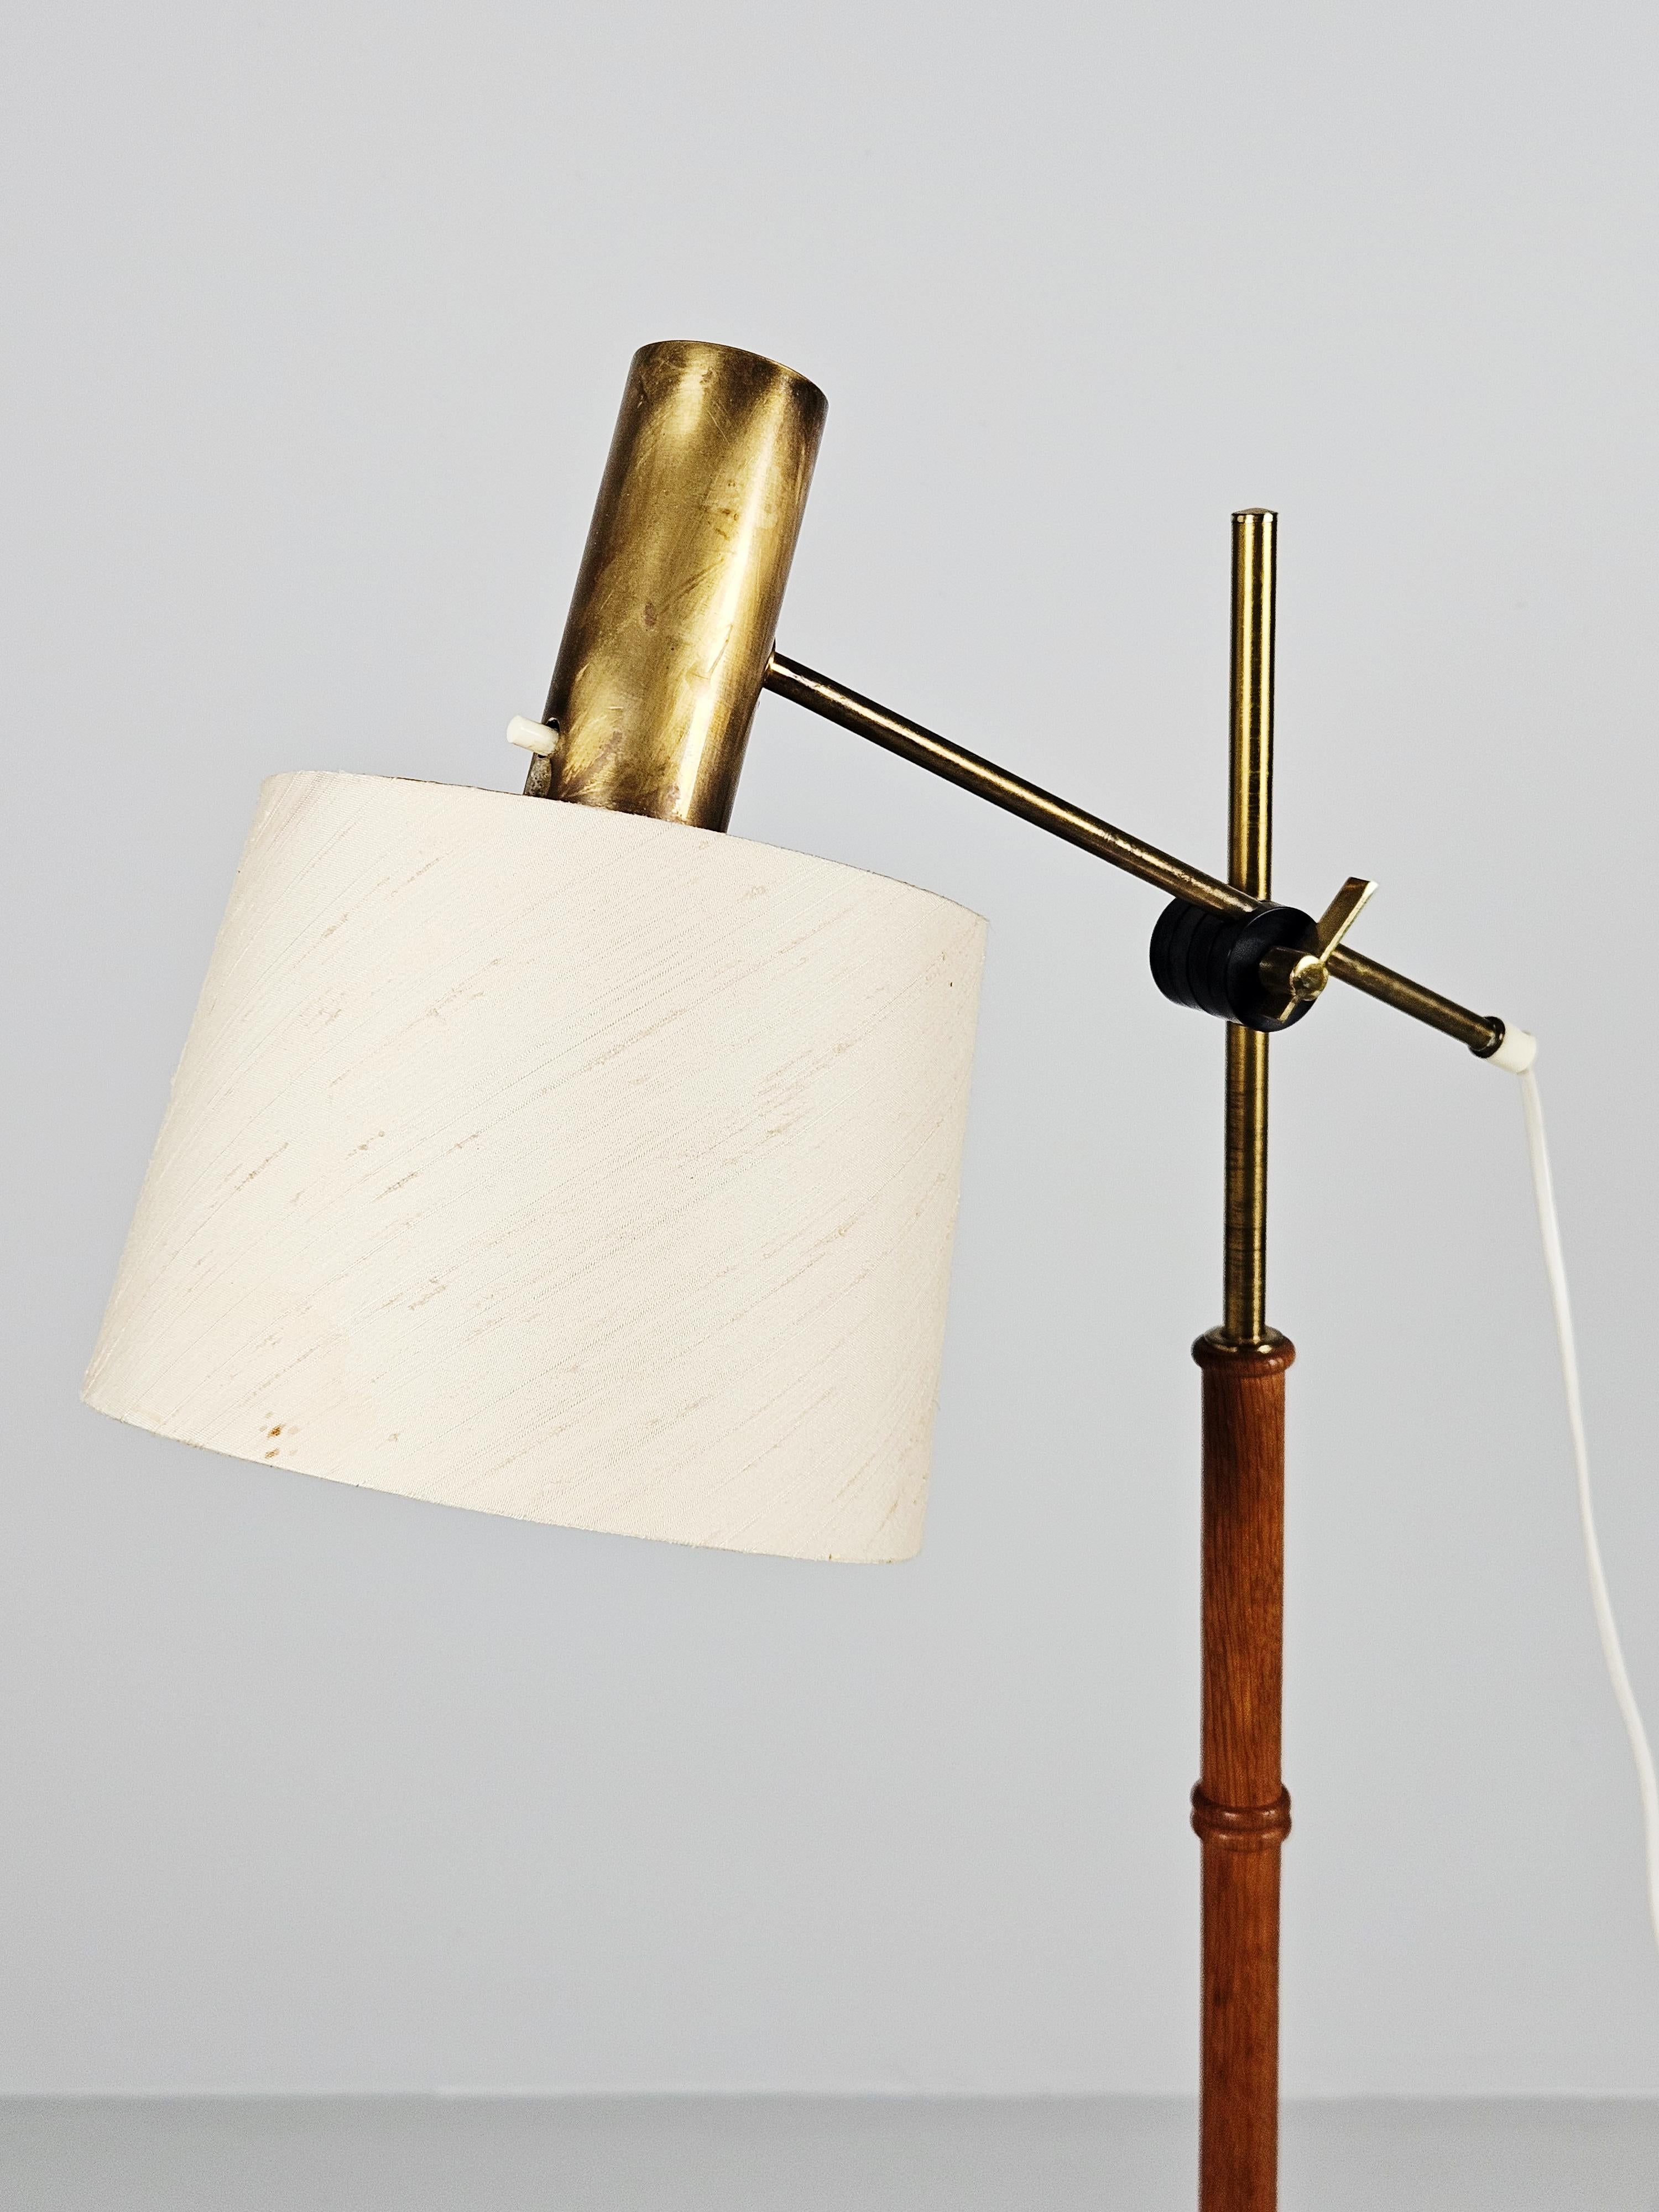 Magnifique lampadaire fabriqué par Falkenberg belysning dans les années 1960.

Fabriqué en laiton et en teck avec un bras réglable. 

Belle patine et livré avec l'abat-jour d'origine qui présente quelques taches sur le tissu. 